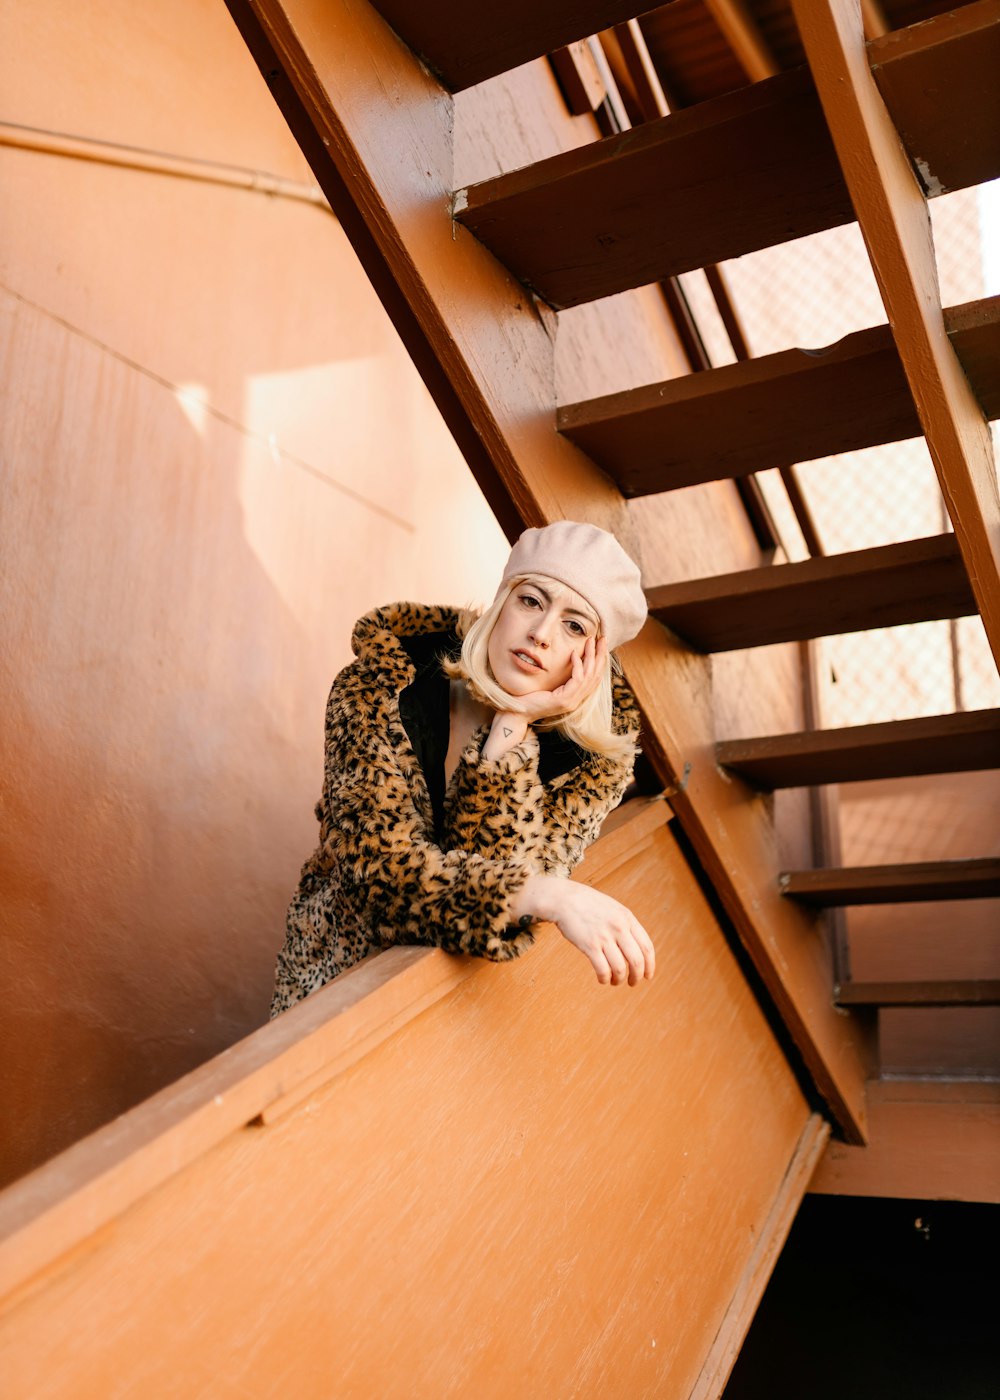 木の階段に寄りかかるヒョウ柄のコートを着た女性